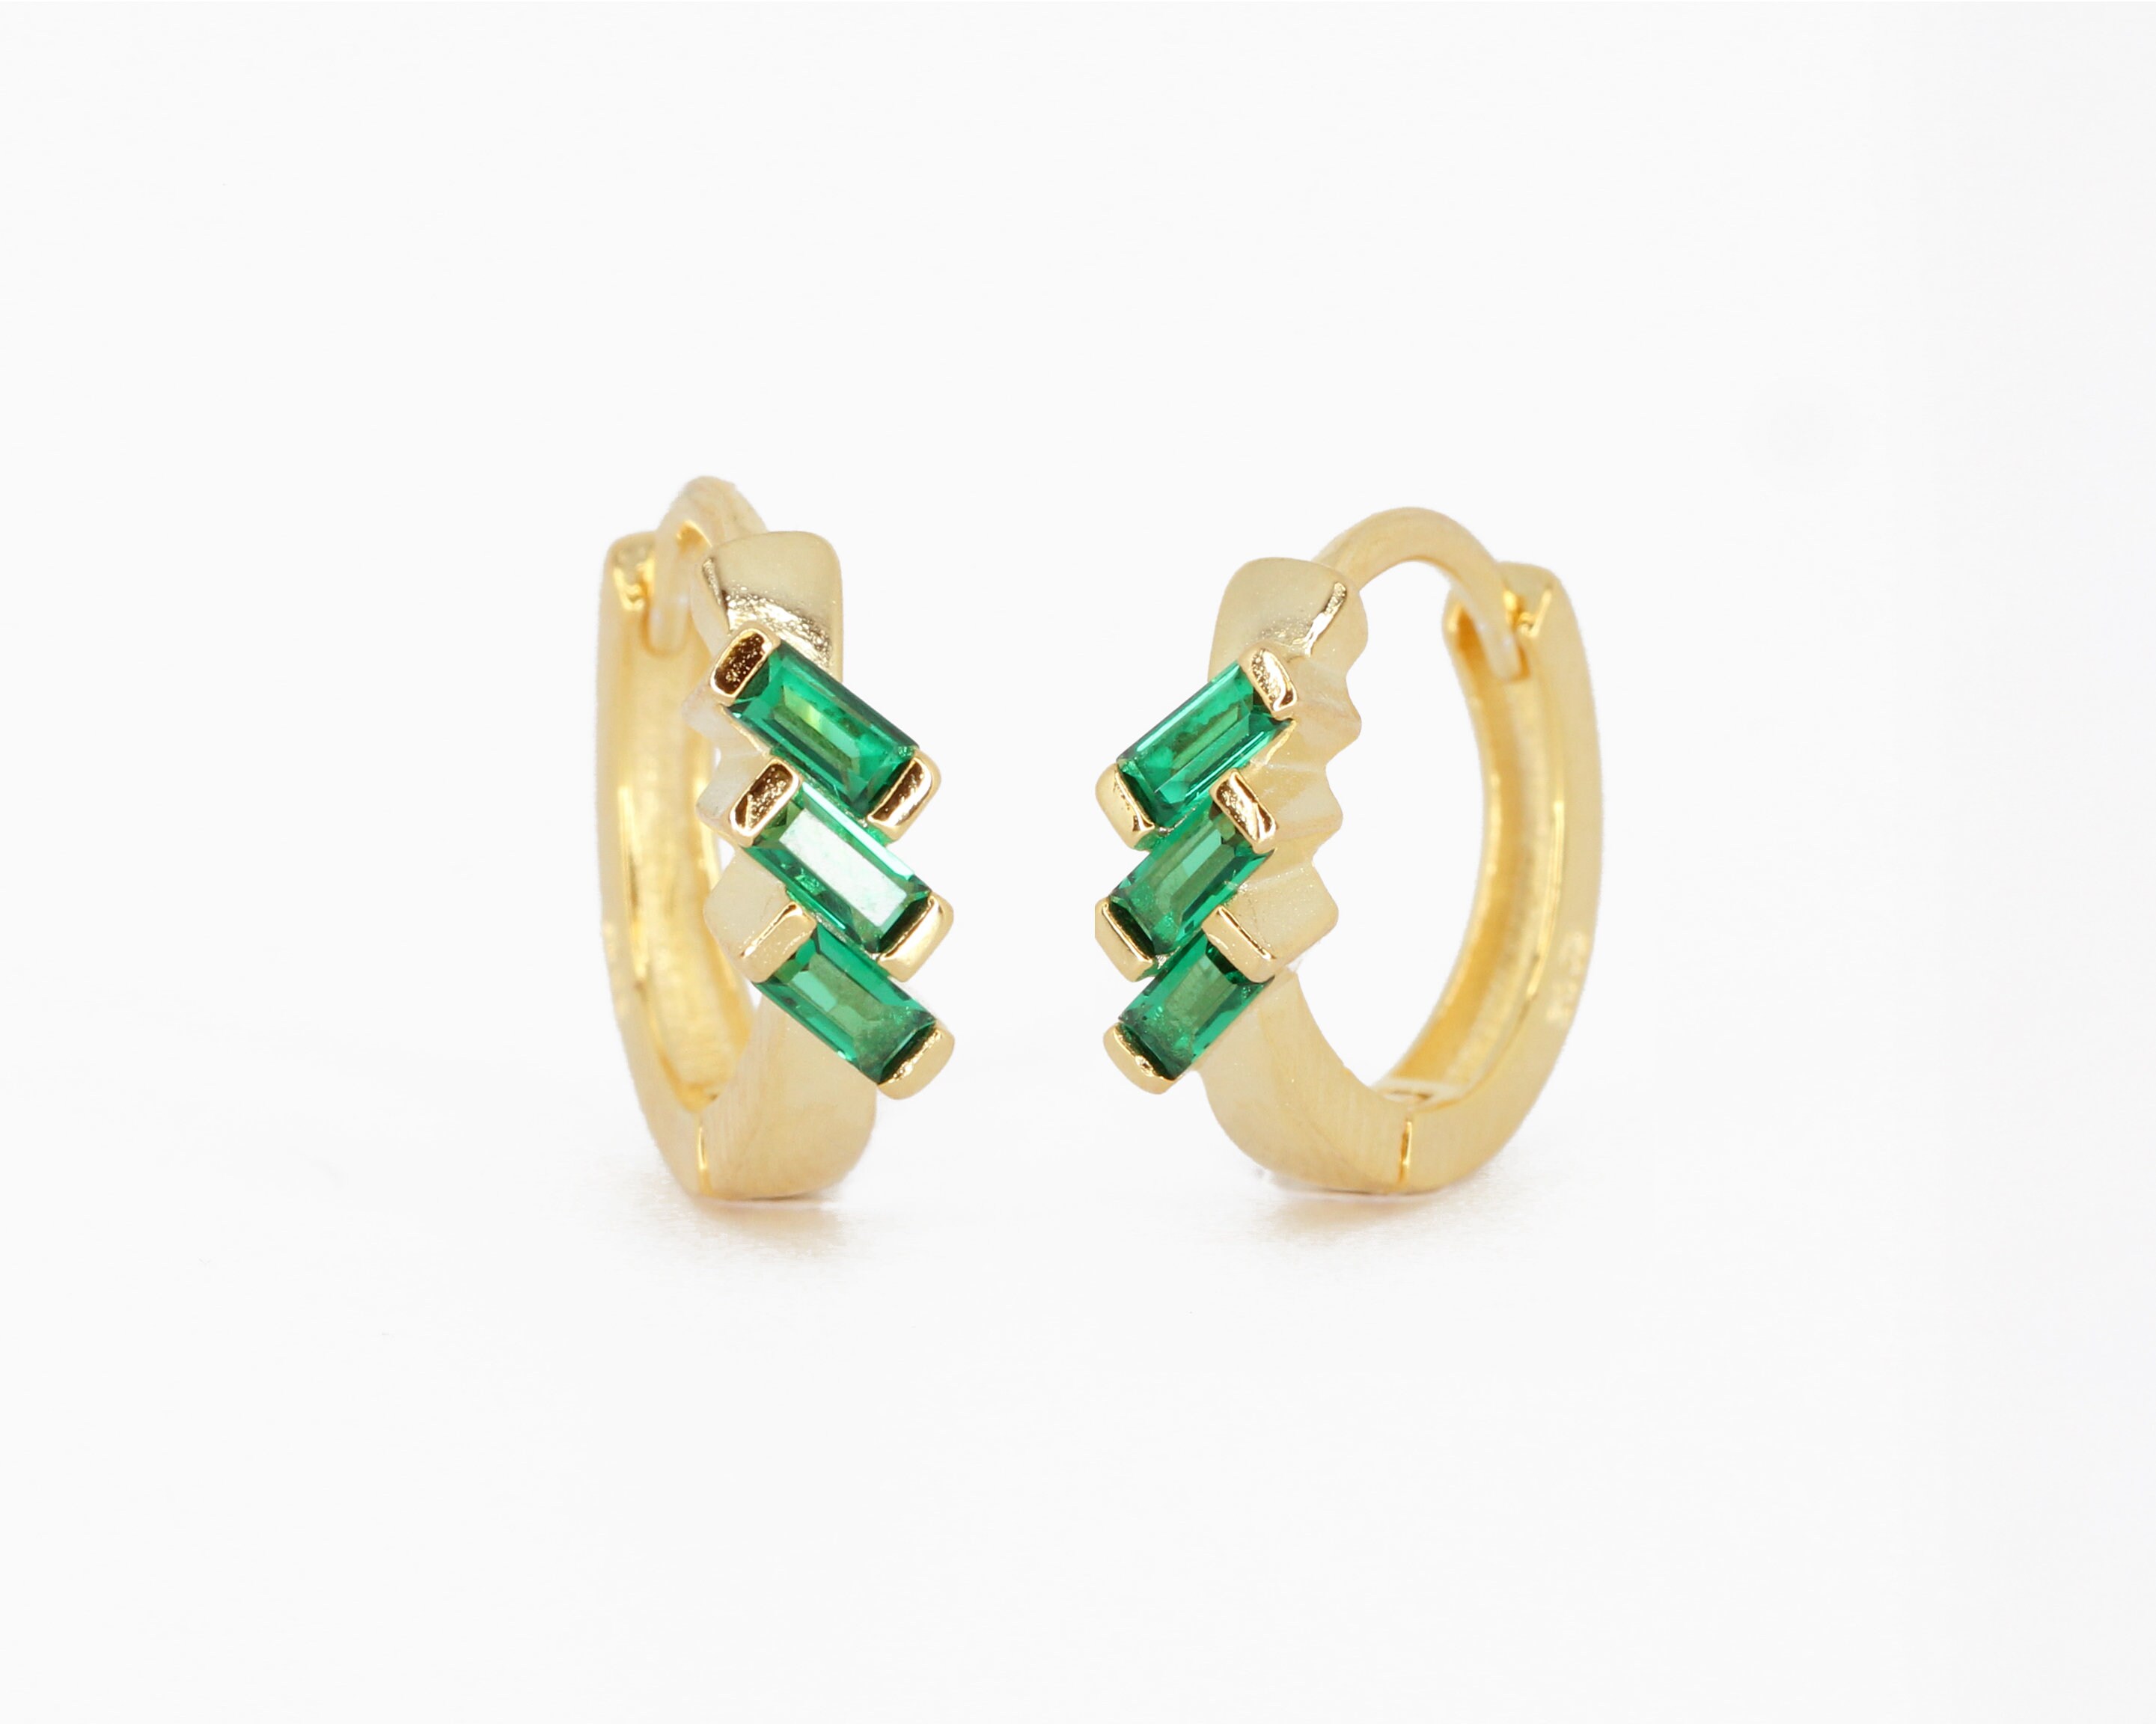 Emerald Baguette Cut Huggie Hoops huggie hoop earrings | Etsy